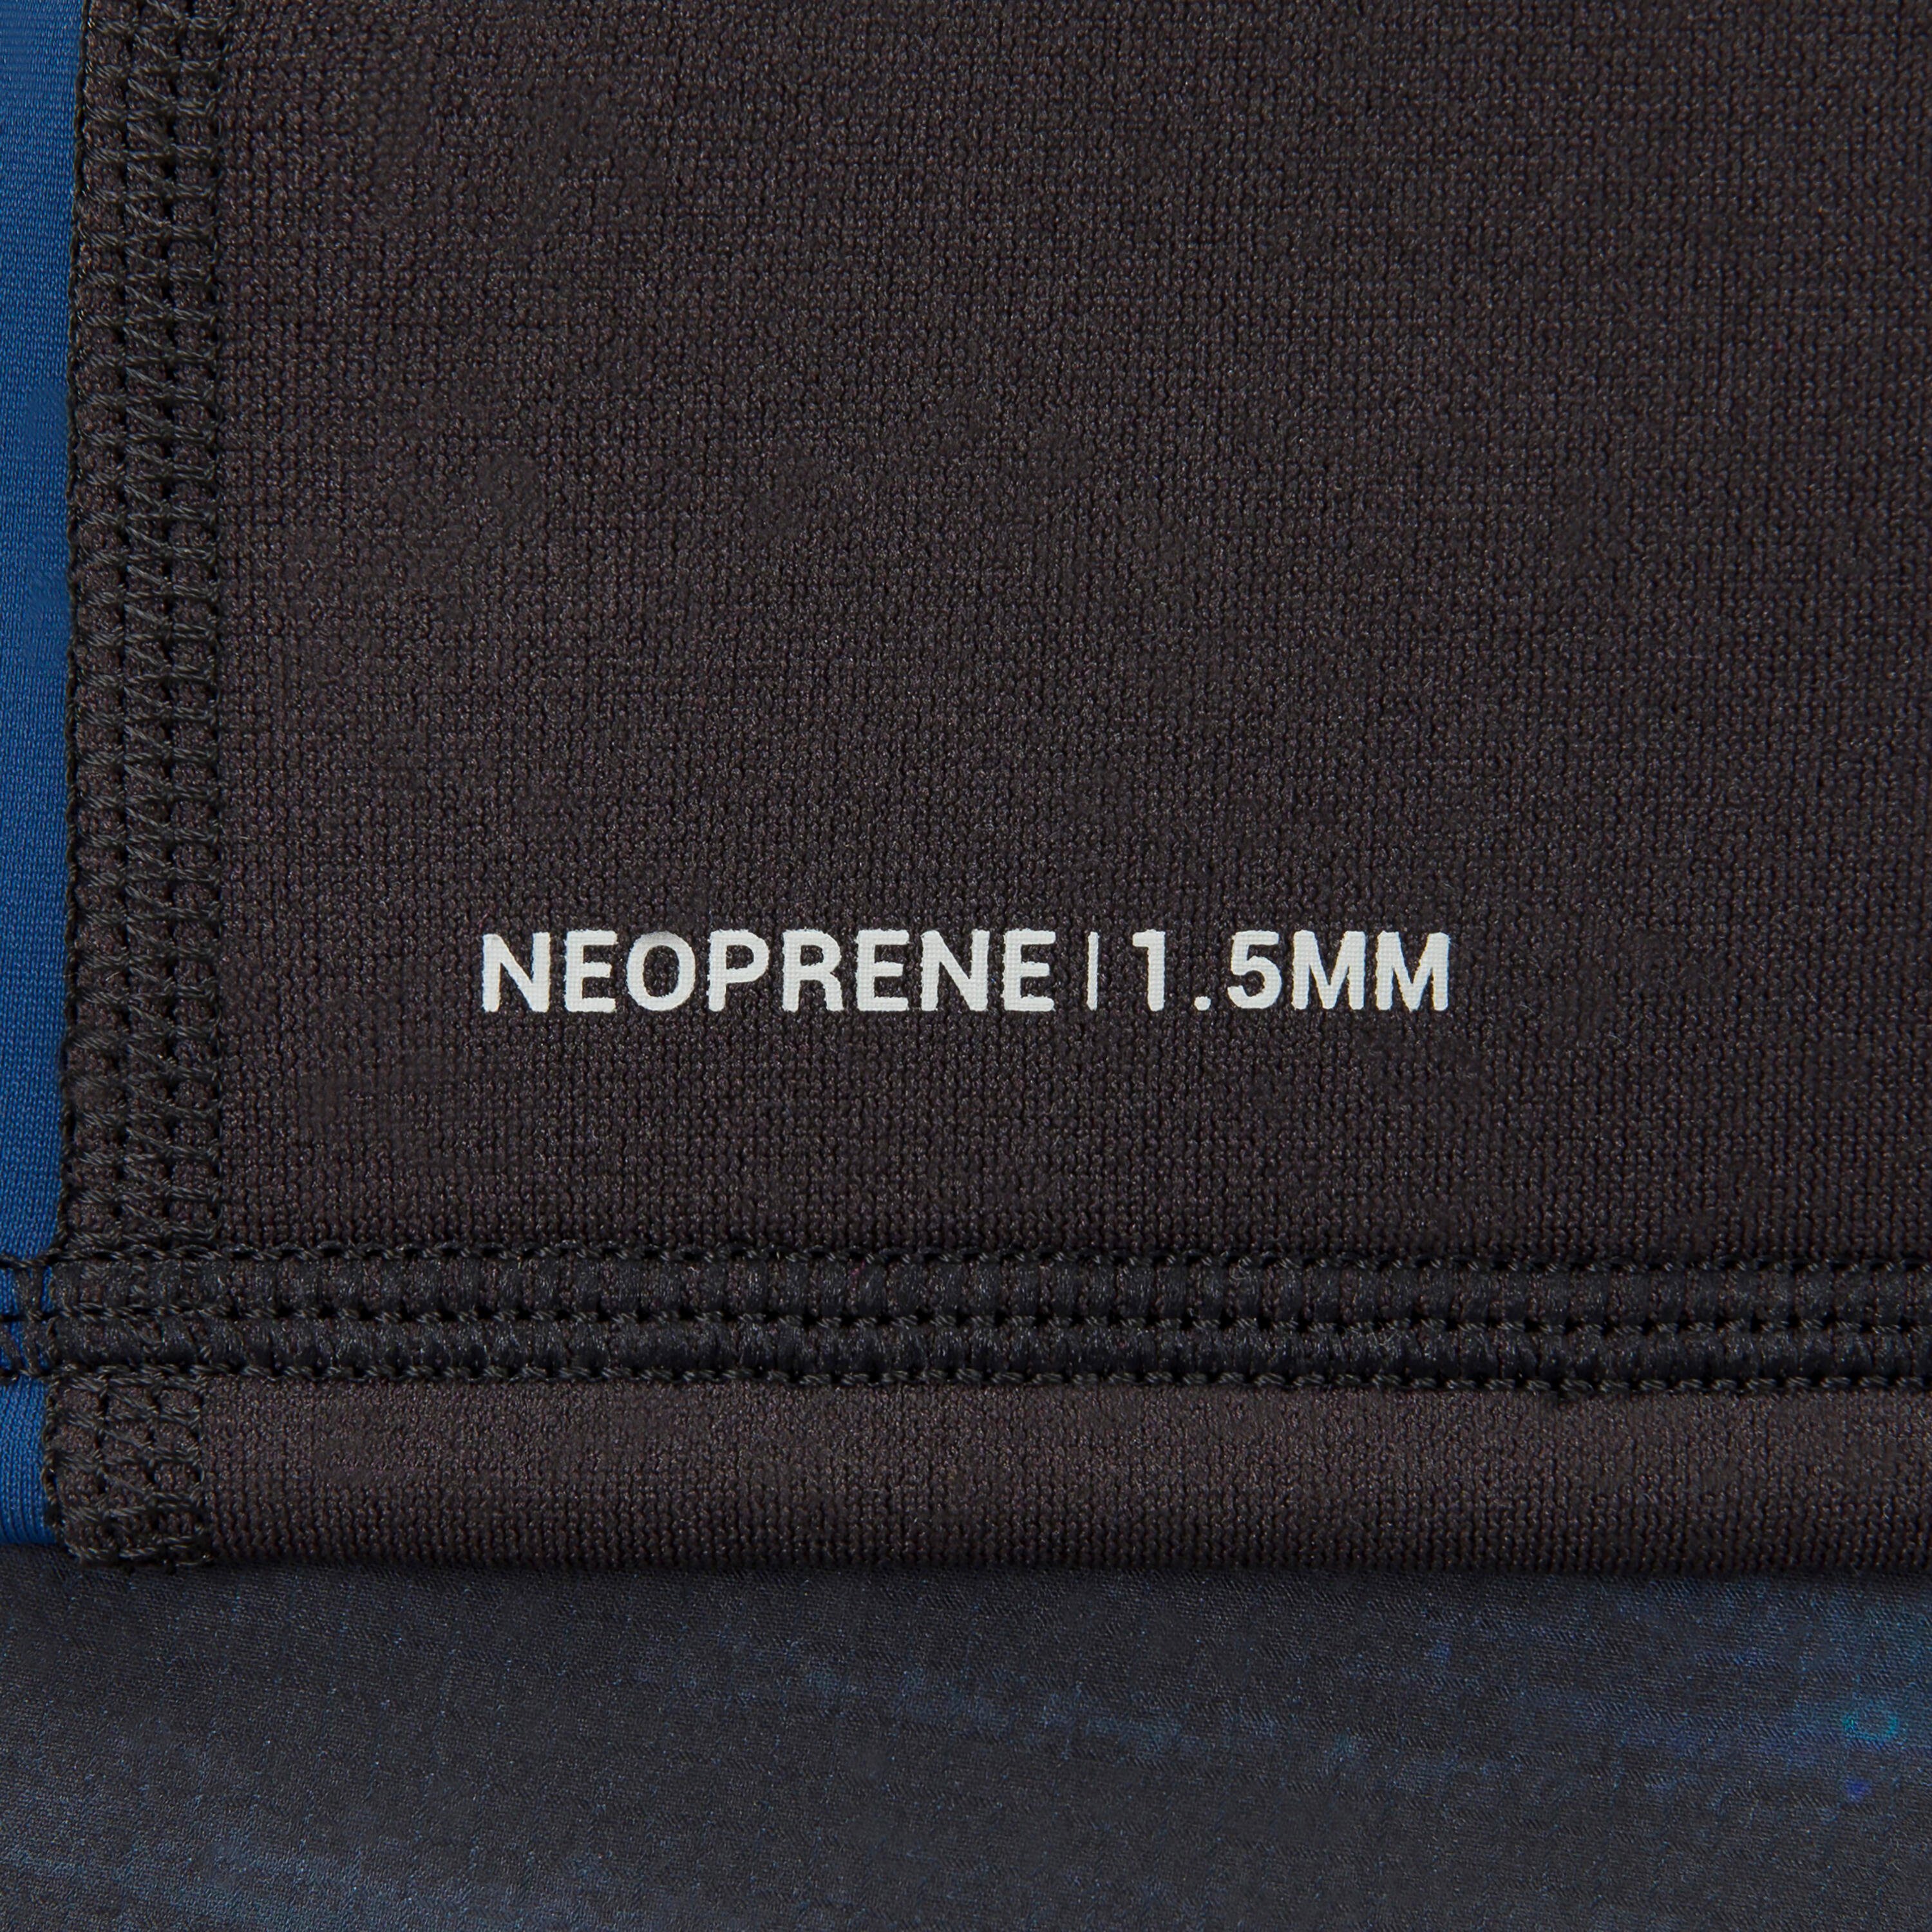 Men's surfing short-sleeved neoprene thermal anti-UV T-shirt top. 6/8